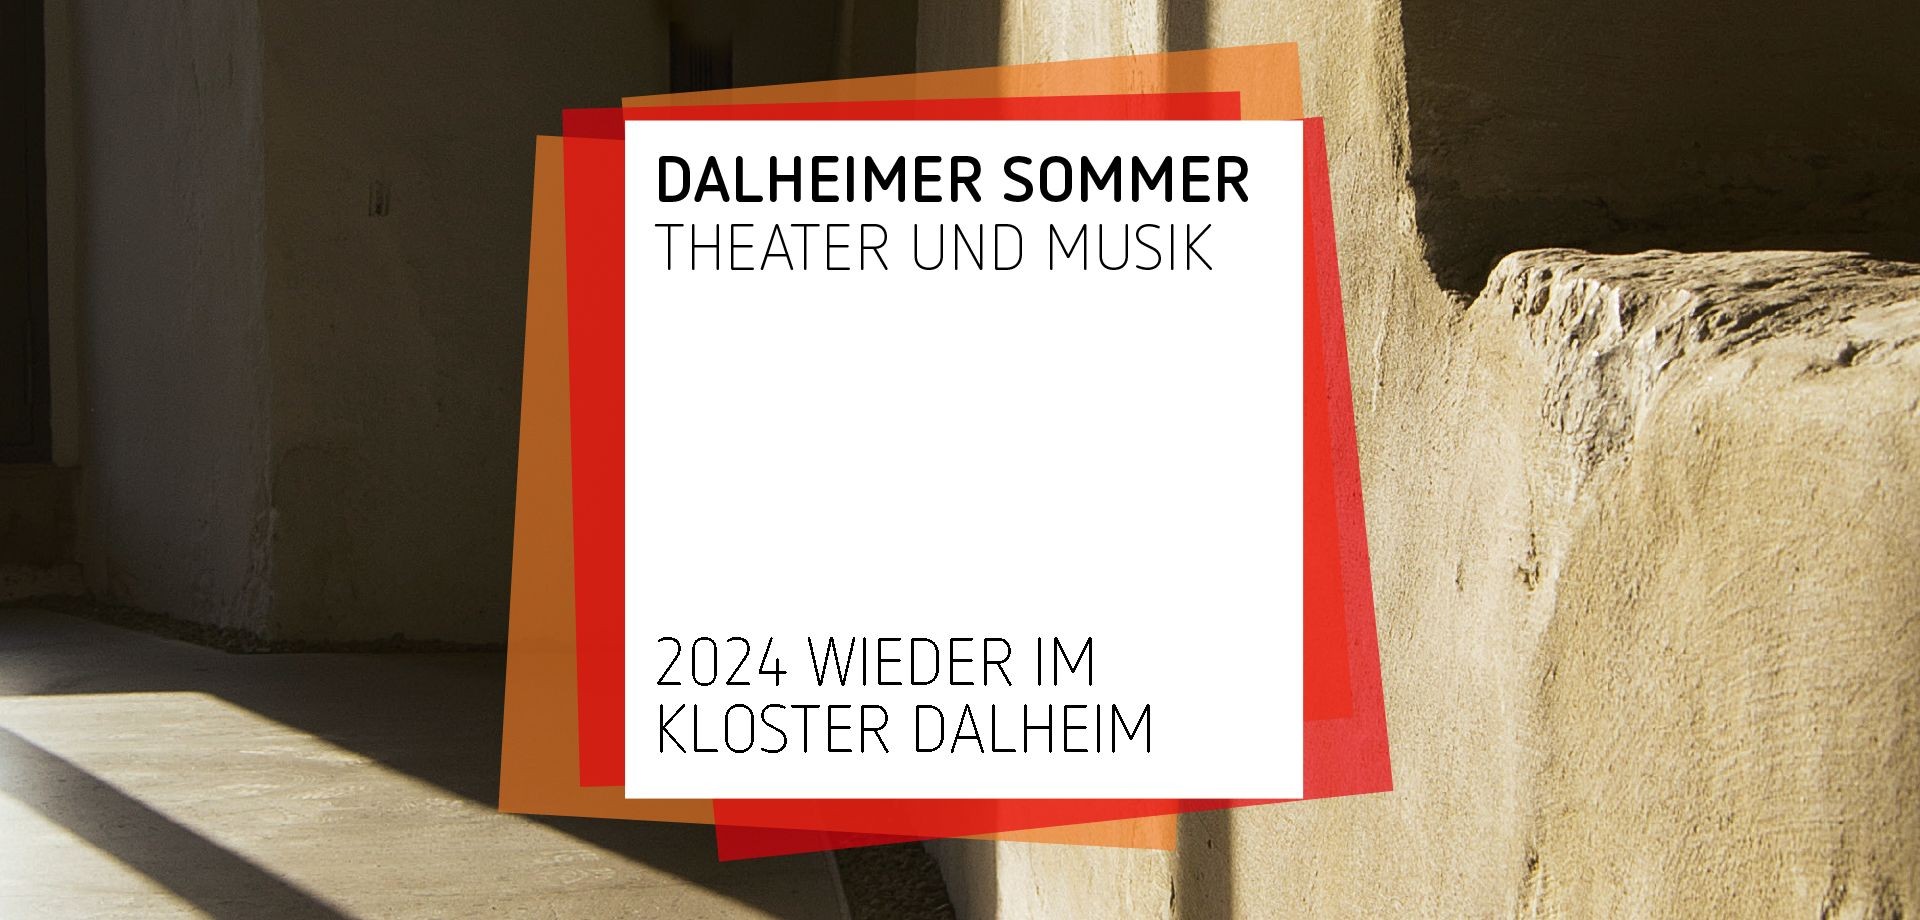 Titelmotiv des Dalheimer Sommers: Wieder in Dalheim 2024